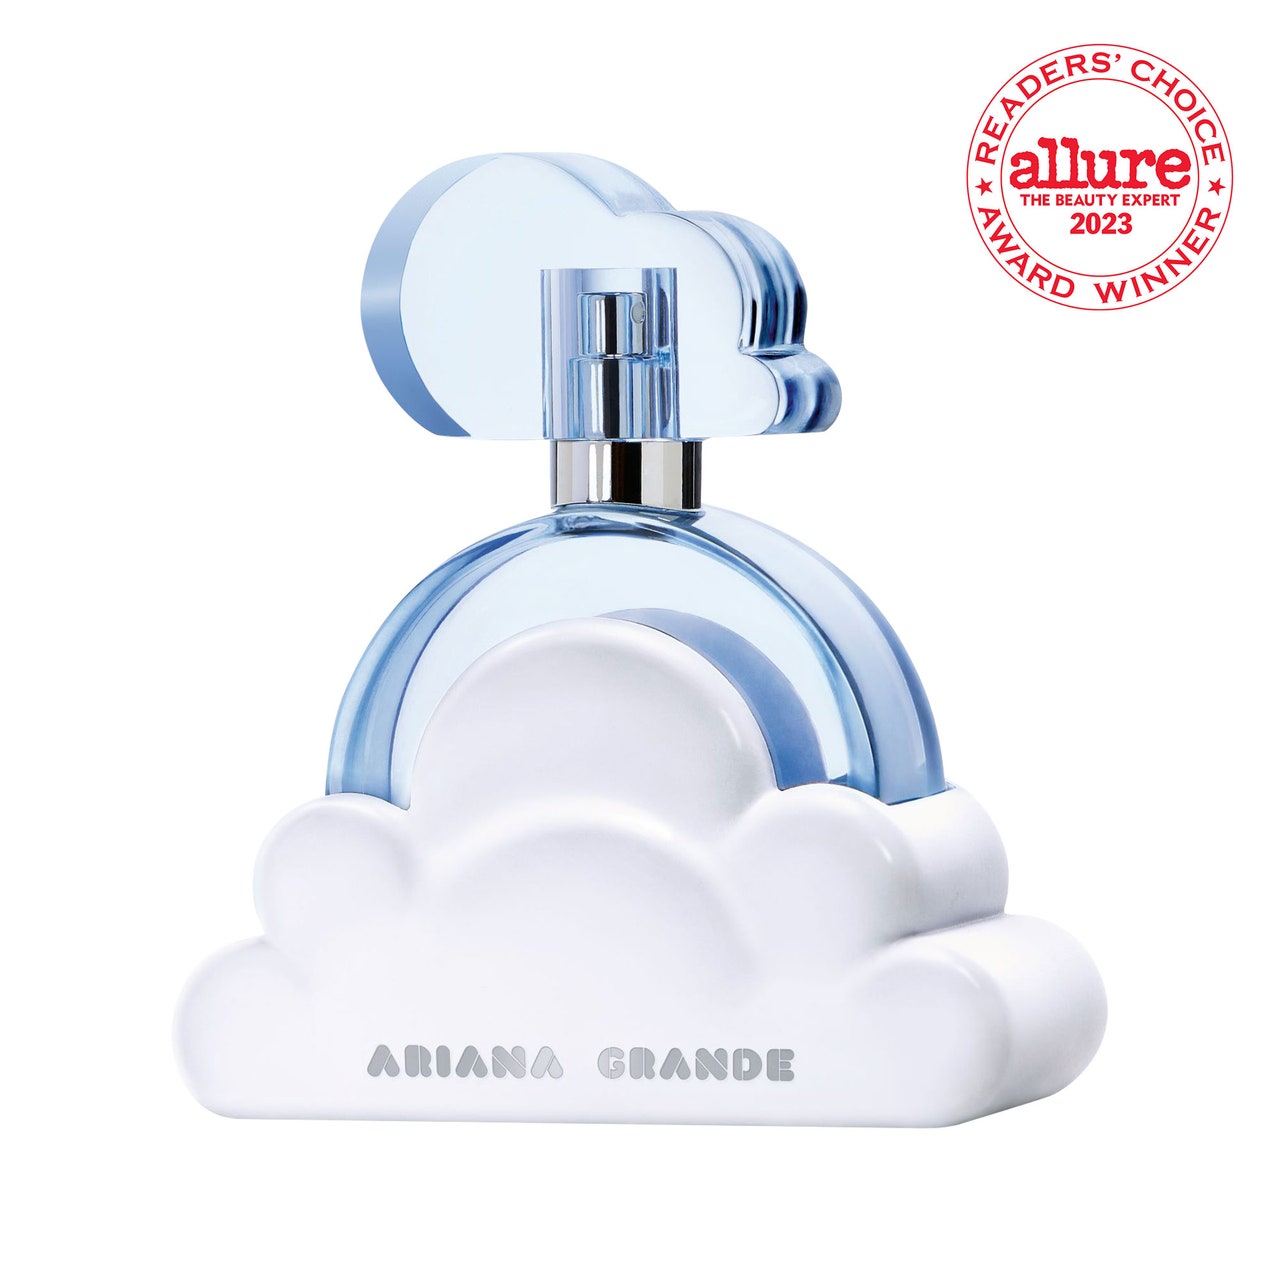 Ariana Grande Cloud Eau de Parfum hellblaue, wolkenförmige Parfümflasche auf weißem Hintergrund mit RCA-Siegel in der oberen rechten Ecke